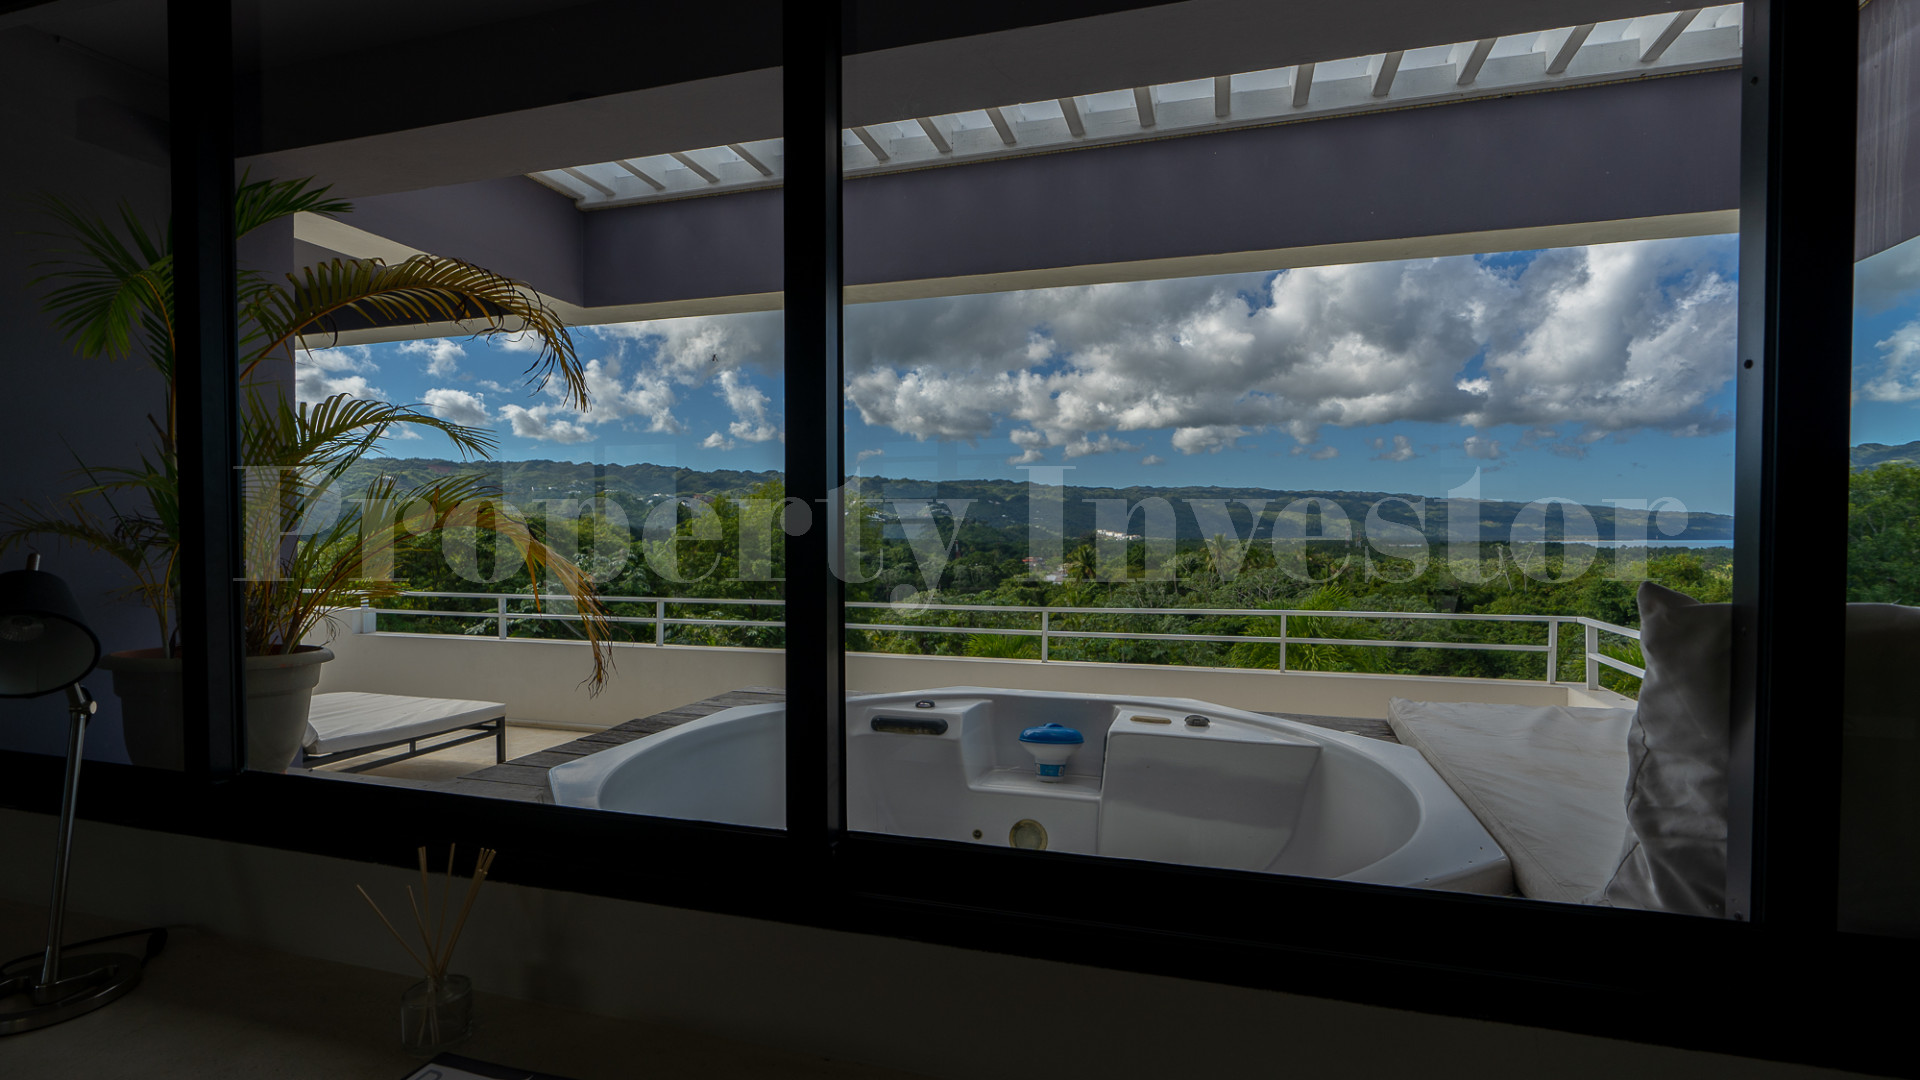 Изумительная дизайнерская вилла с видом на Лас Террерас и Плайя Бонита с шикарными открытыми зонами отдыха